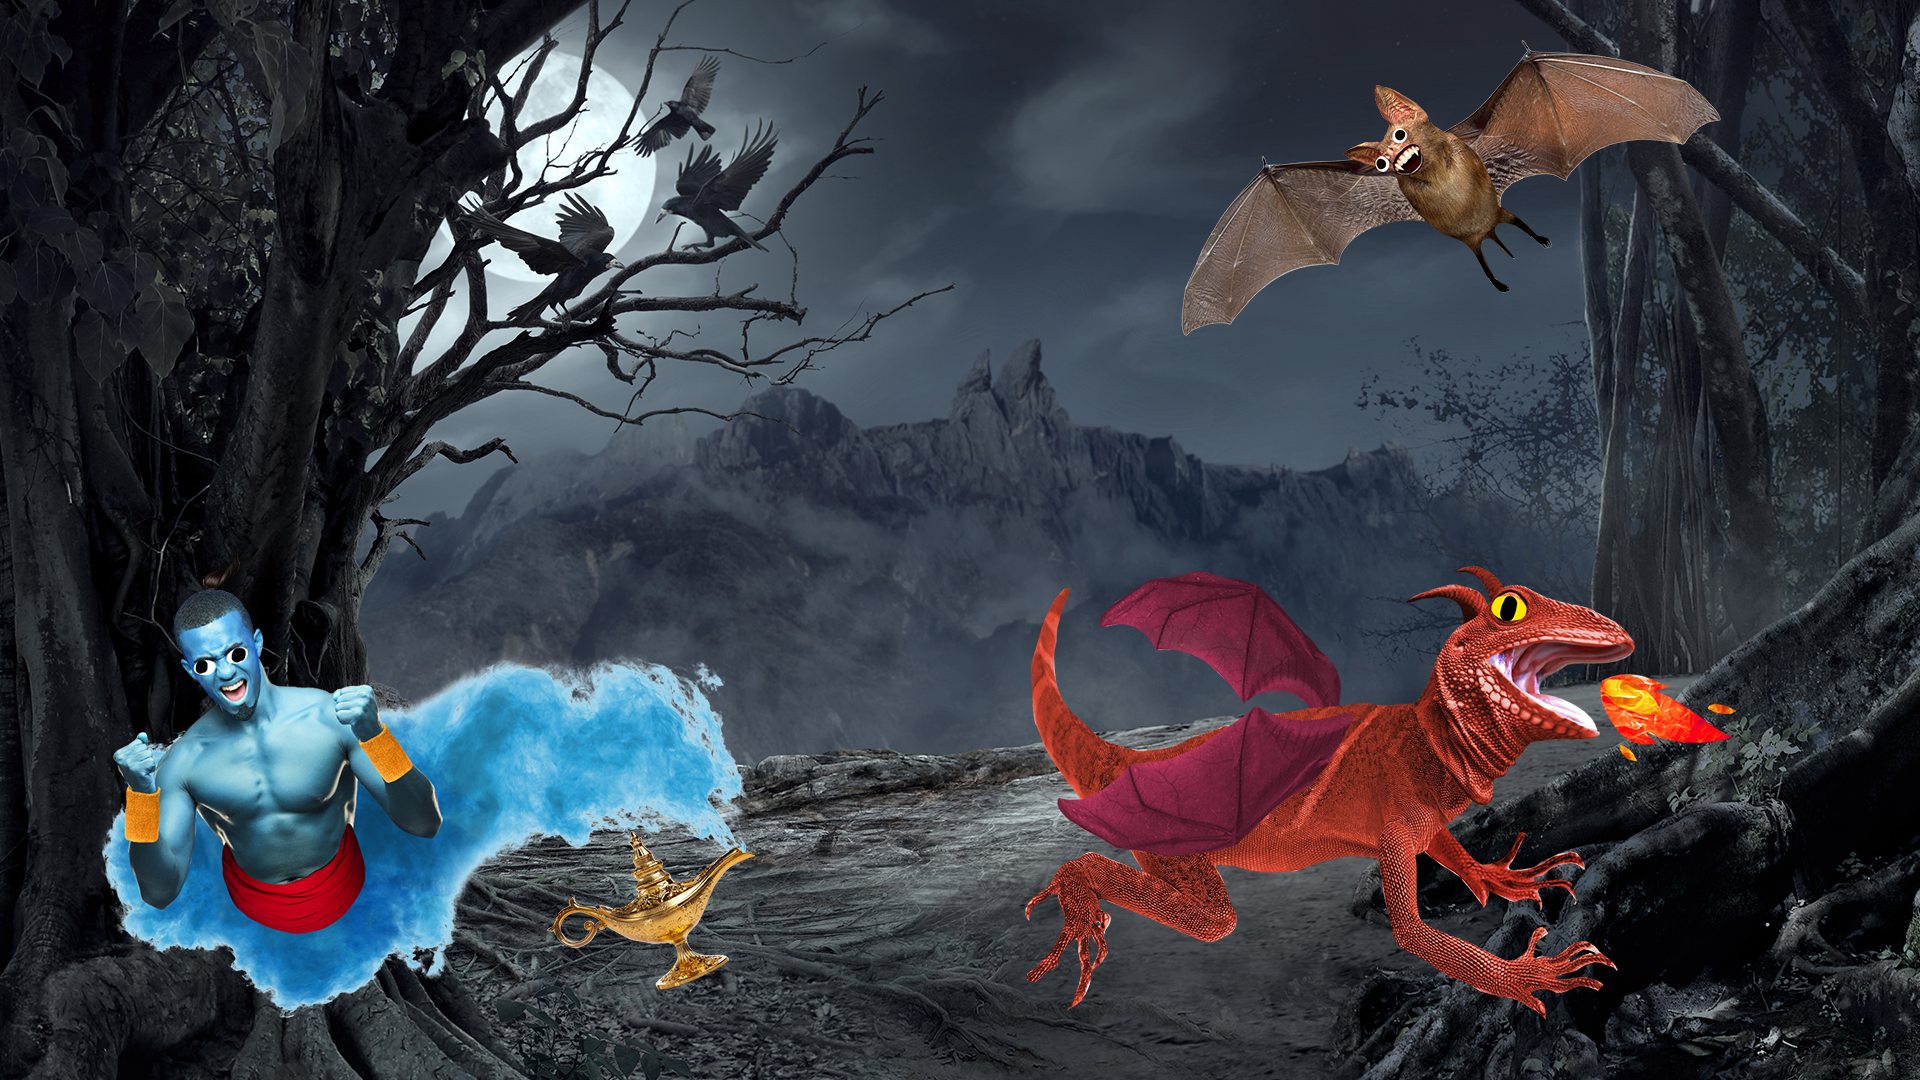 A genie, a bat and a fire breathing dragon